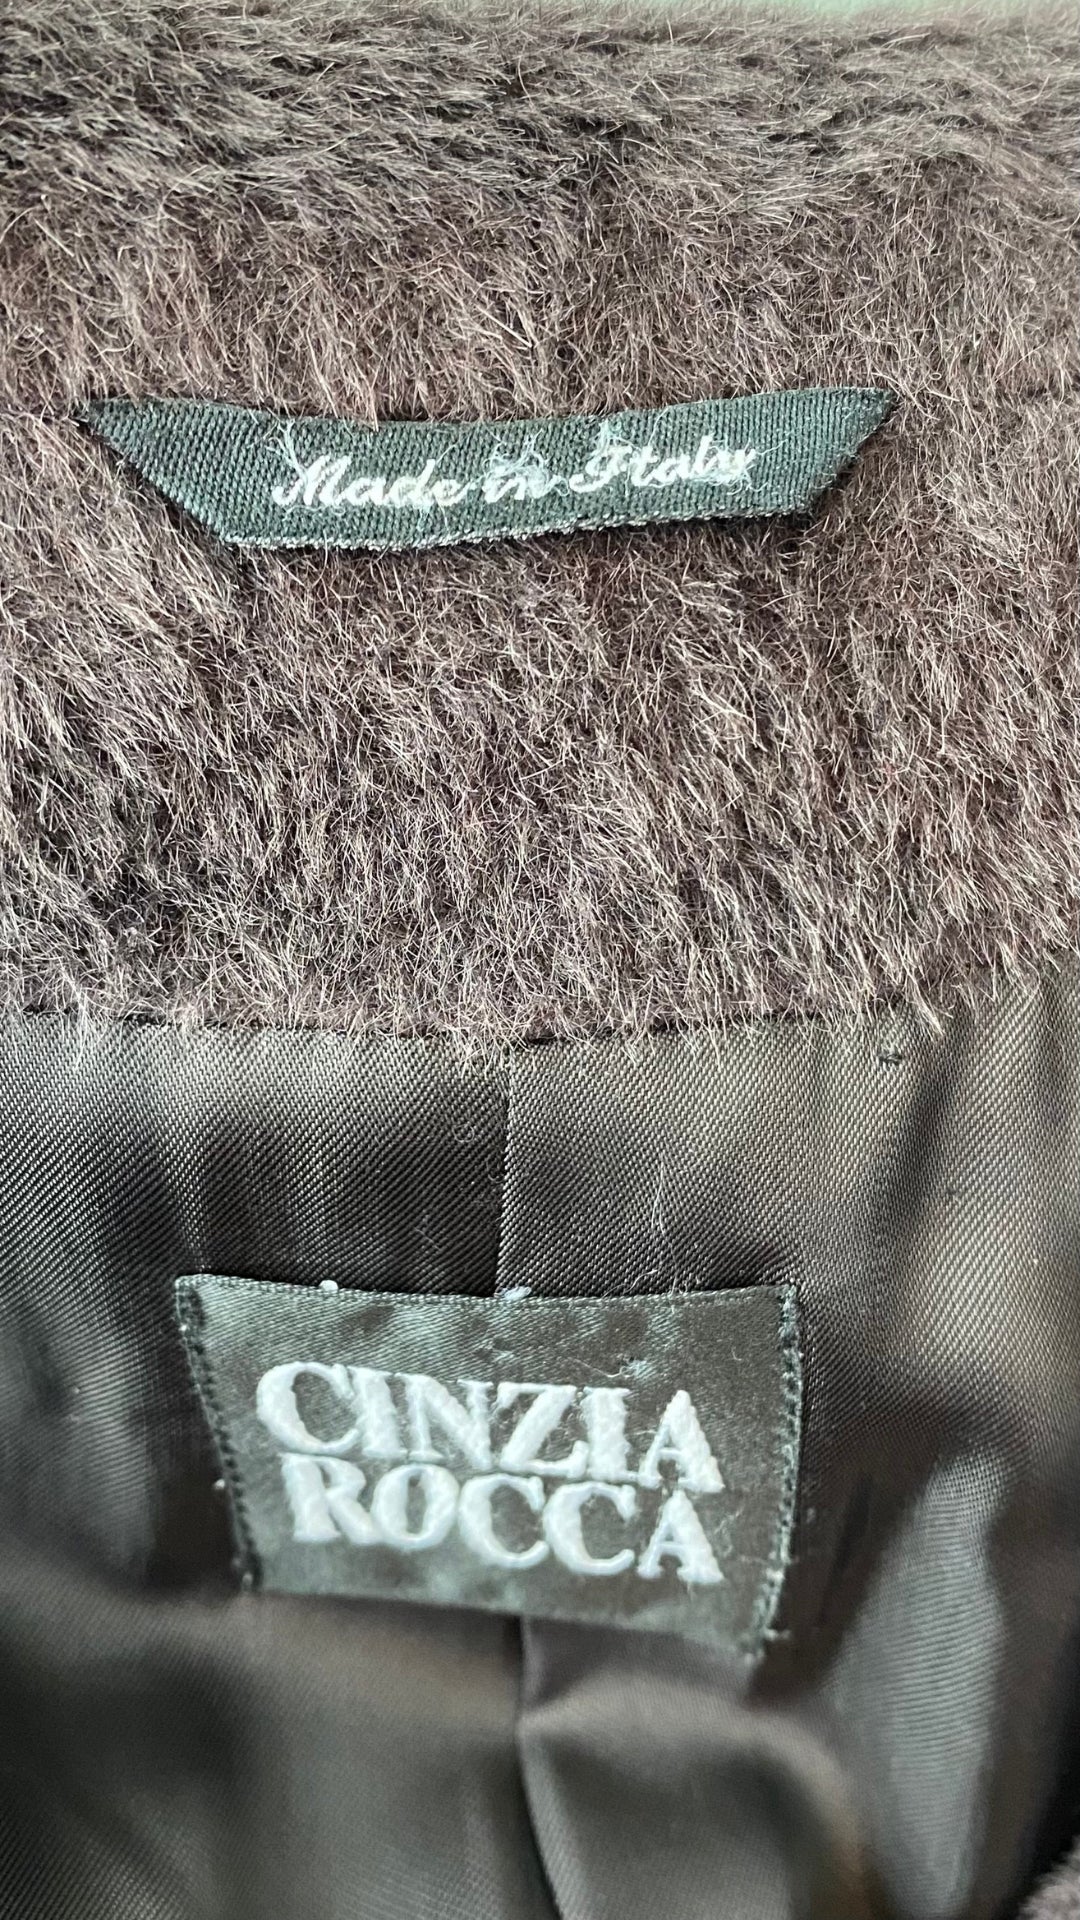 Manteau mi-long chocolat Cinzia Rocca, taille 12 (large et plus). Vue de l'étiquette de marque.